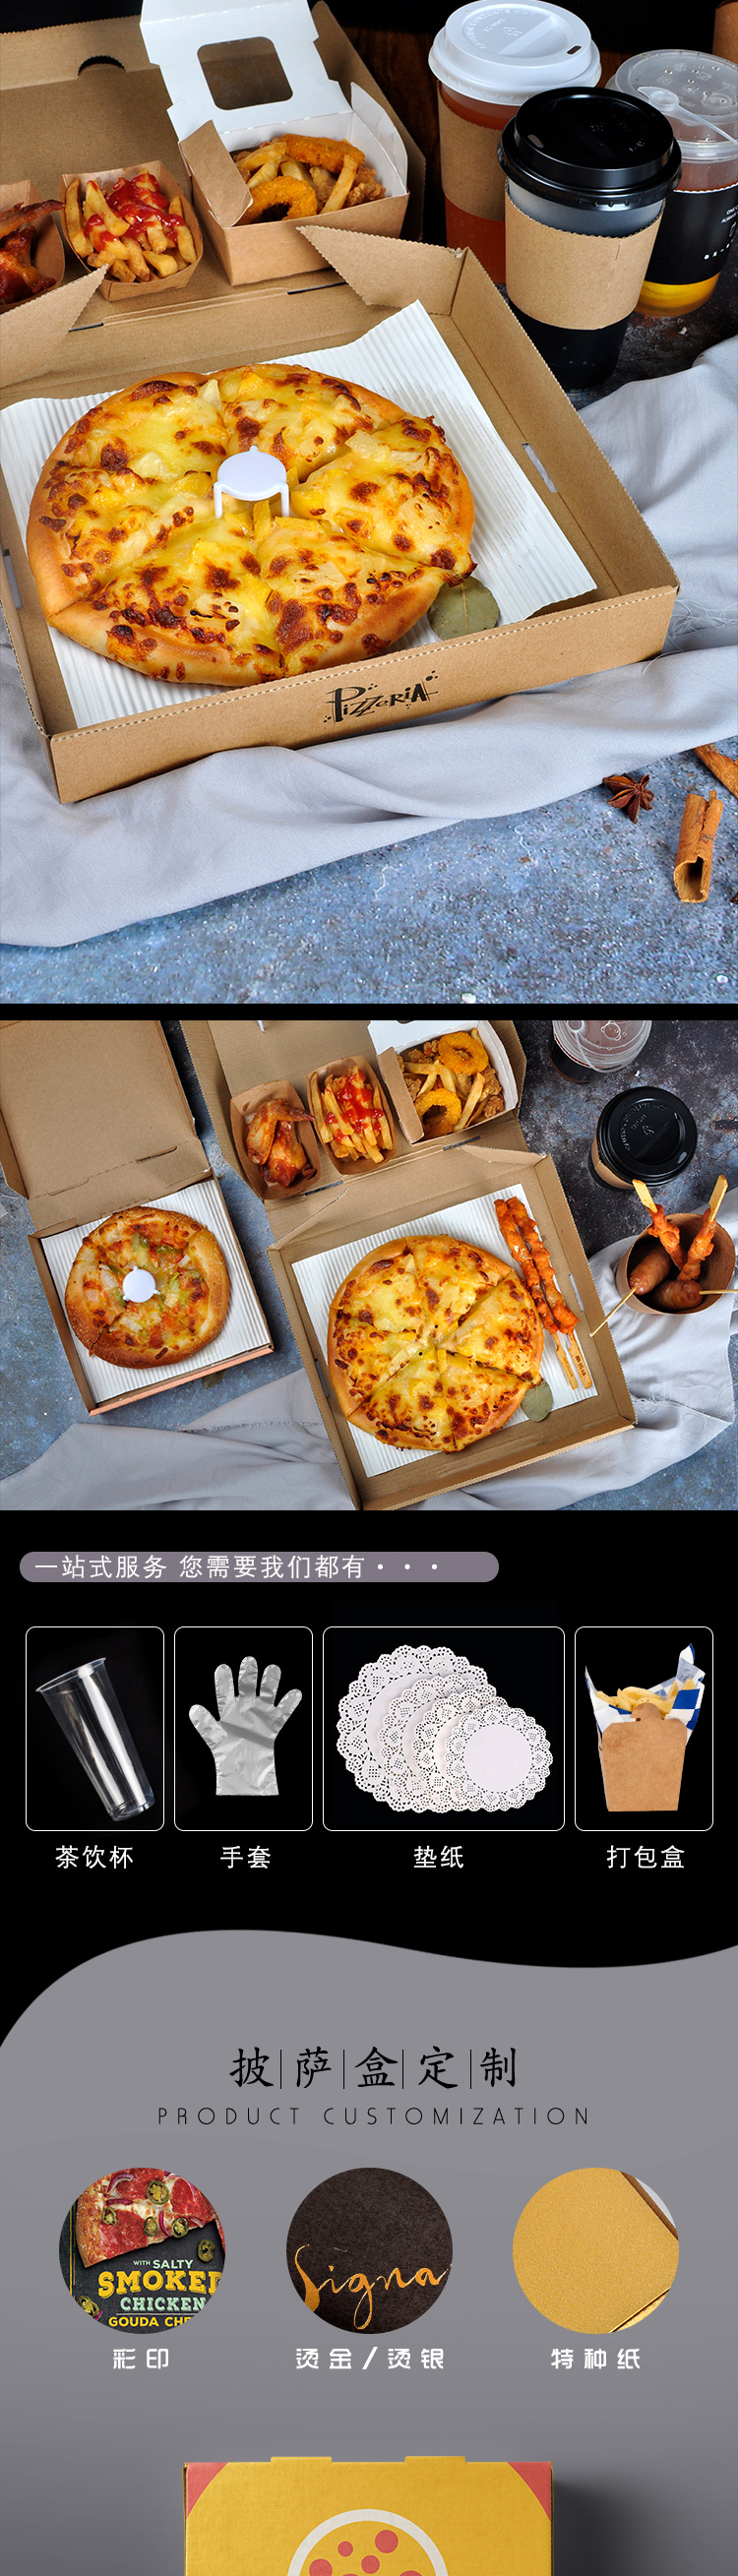 披萨盒详情页（牛皮纸版）_05.jpg